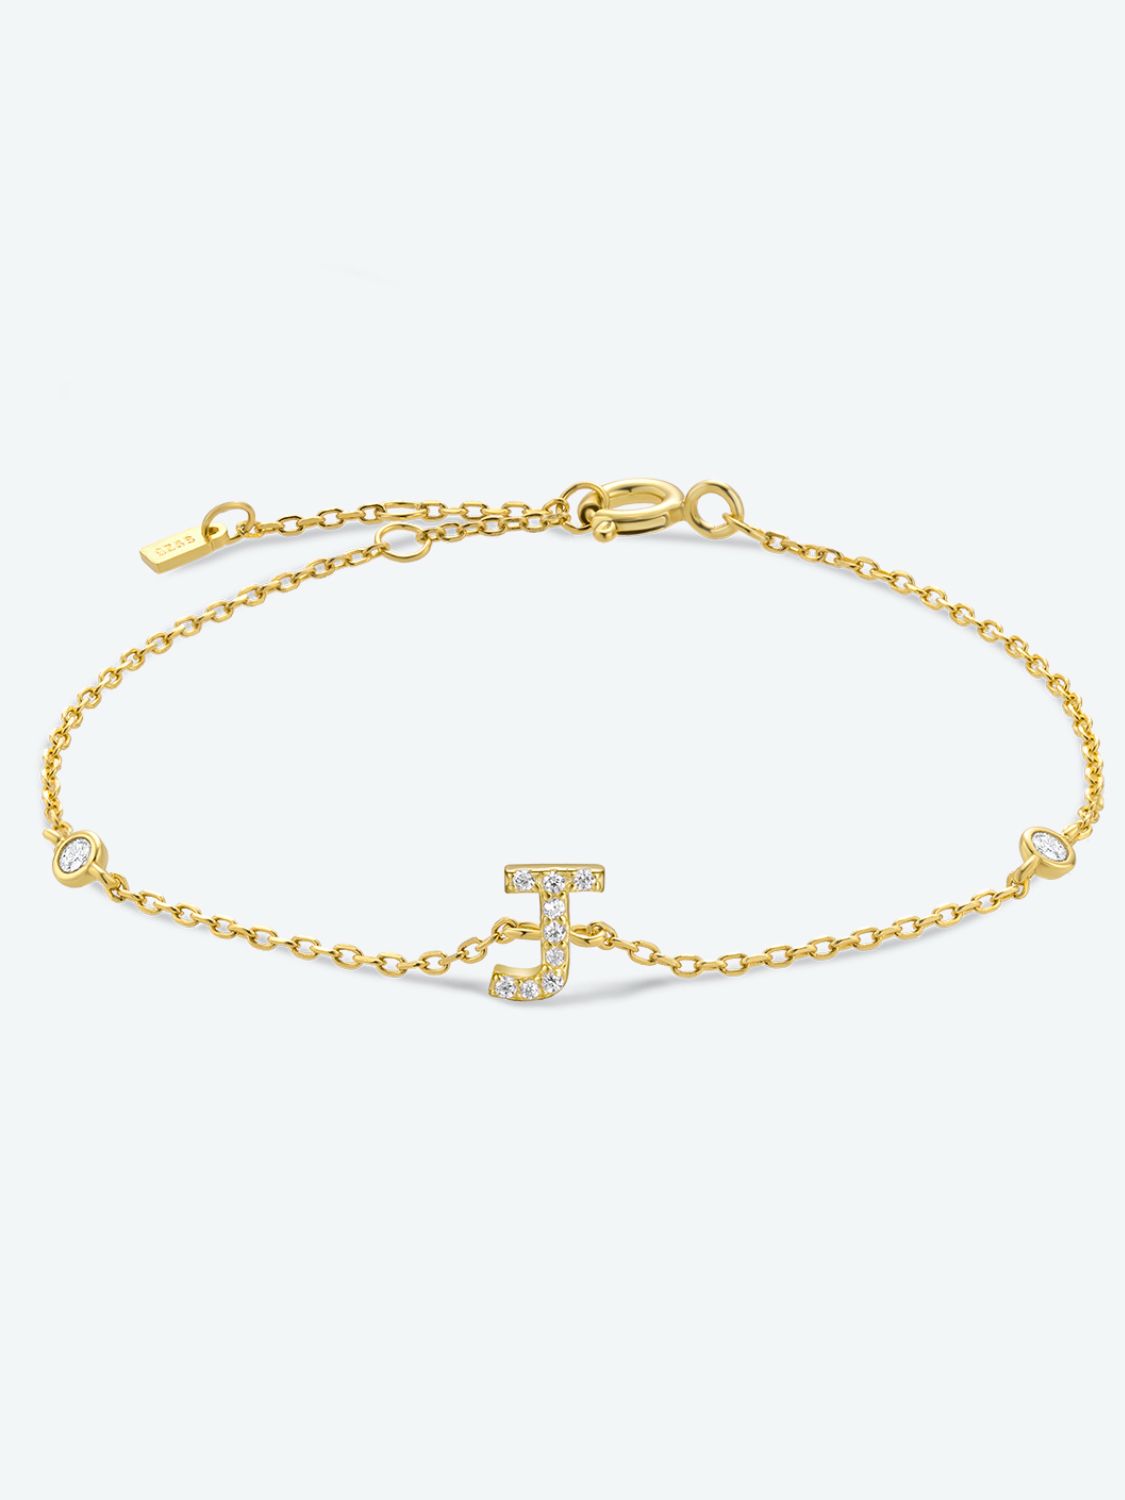 Zircon 925 Sterling Silver Bracelet - J-Gold / One Size - Women’s Jewelry - Bracelets - 19 - 2024